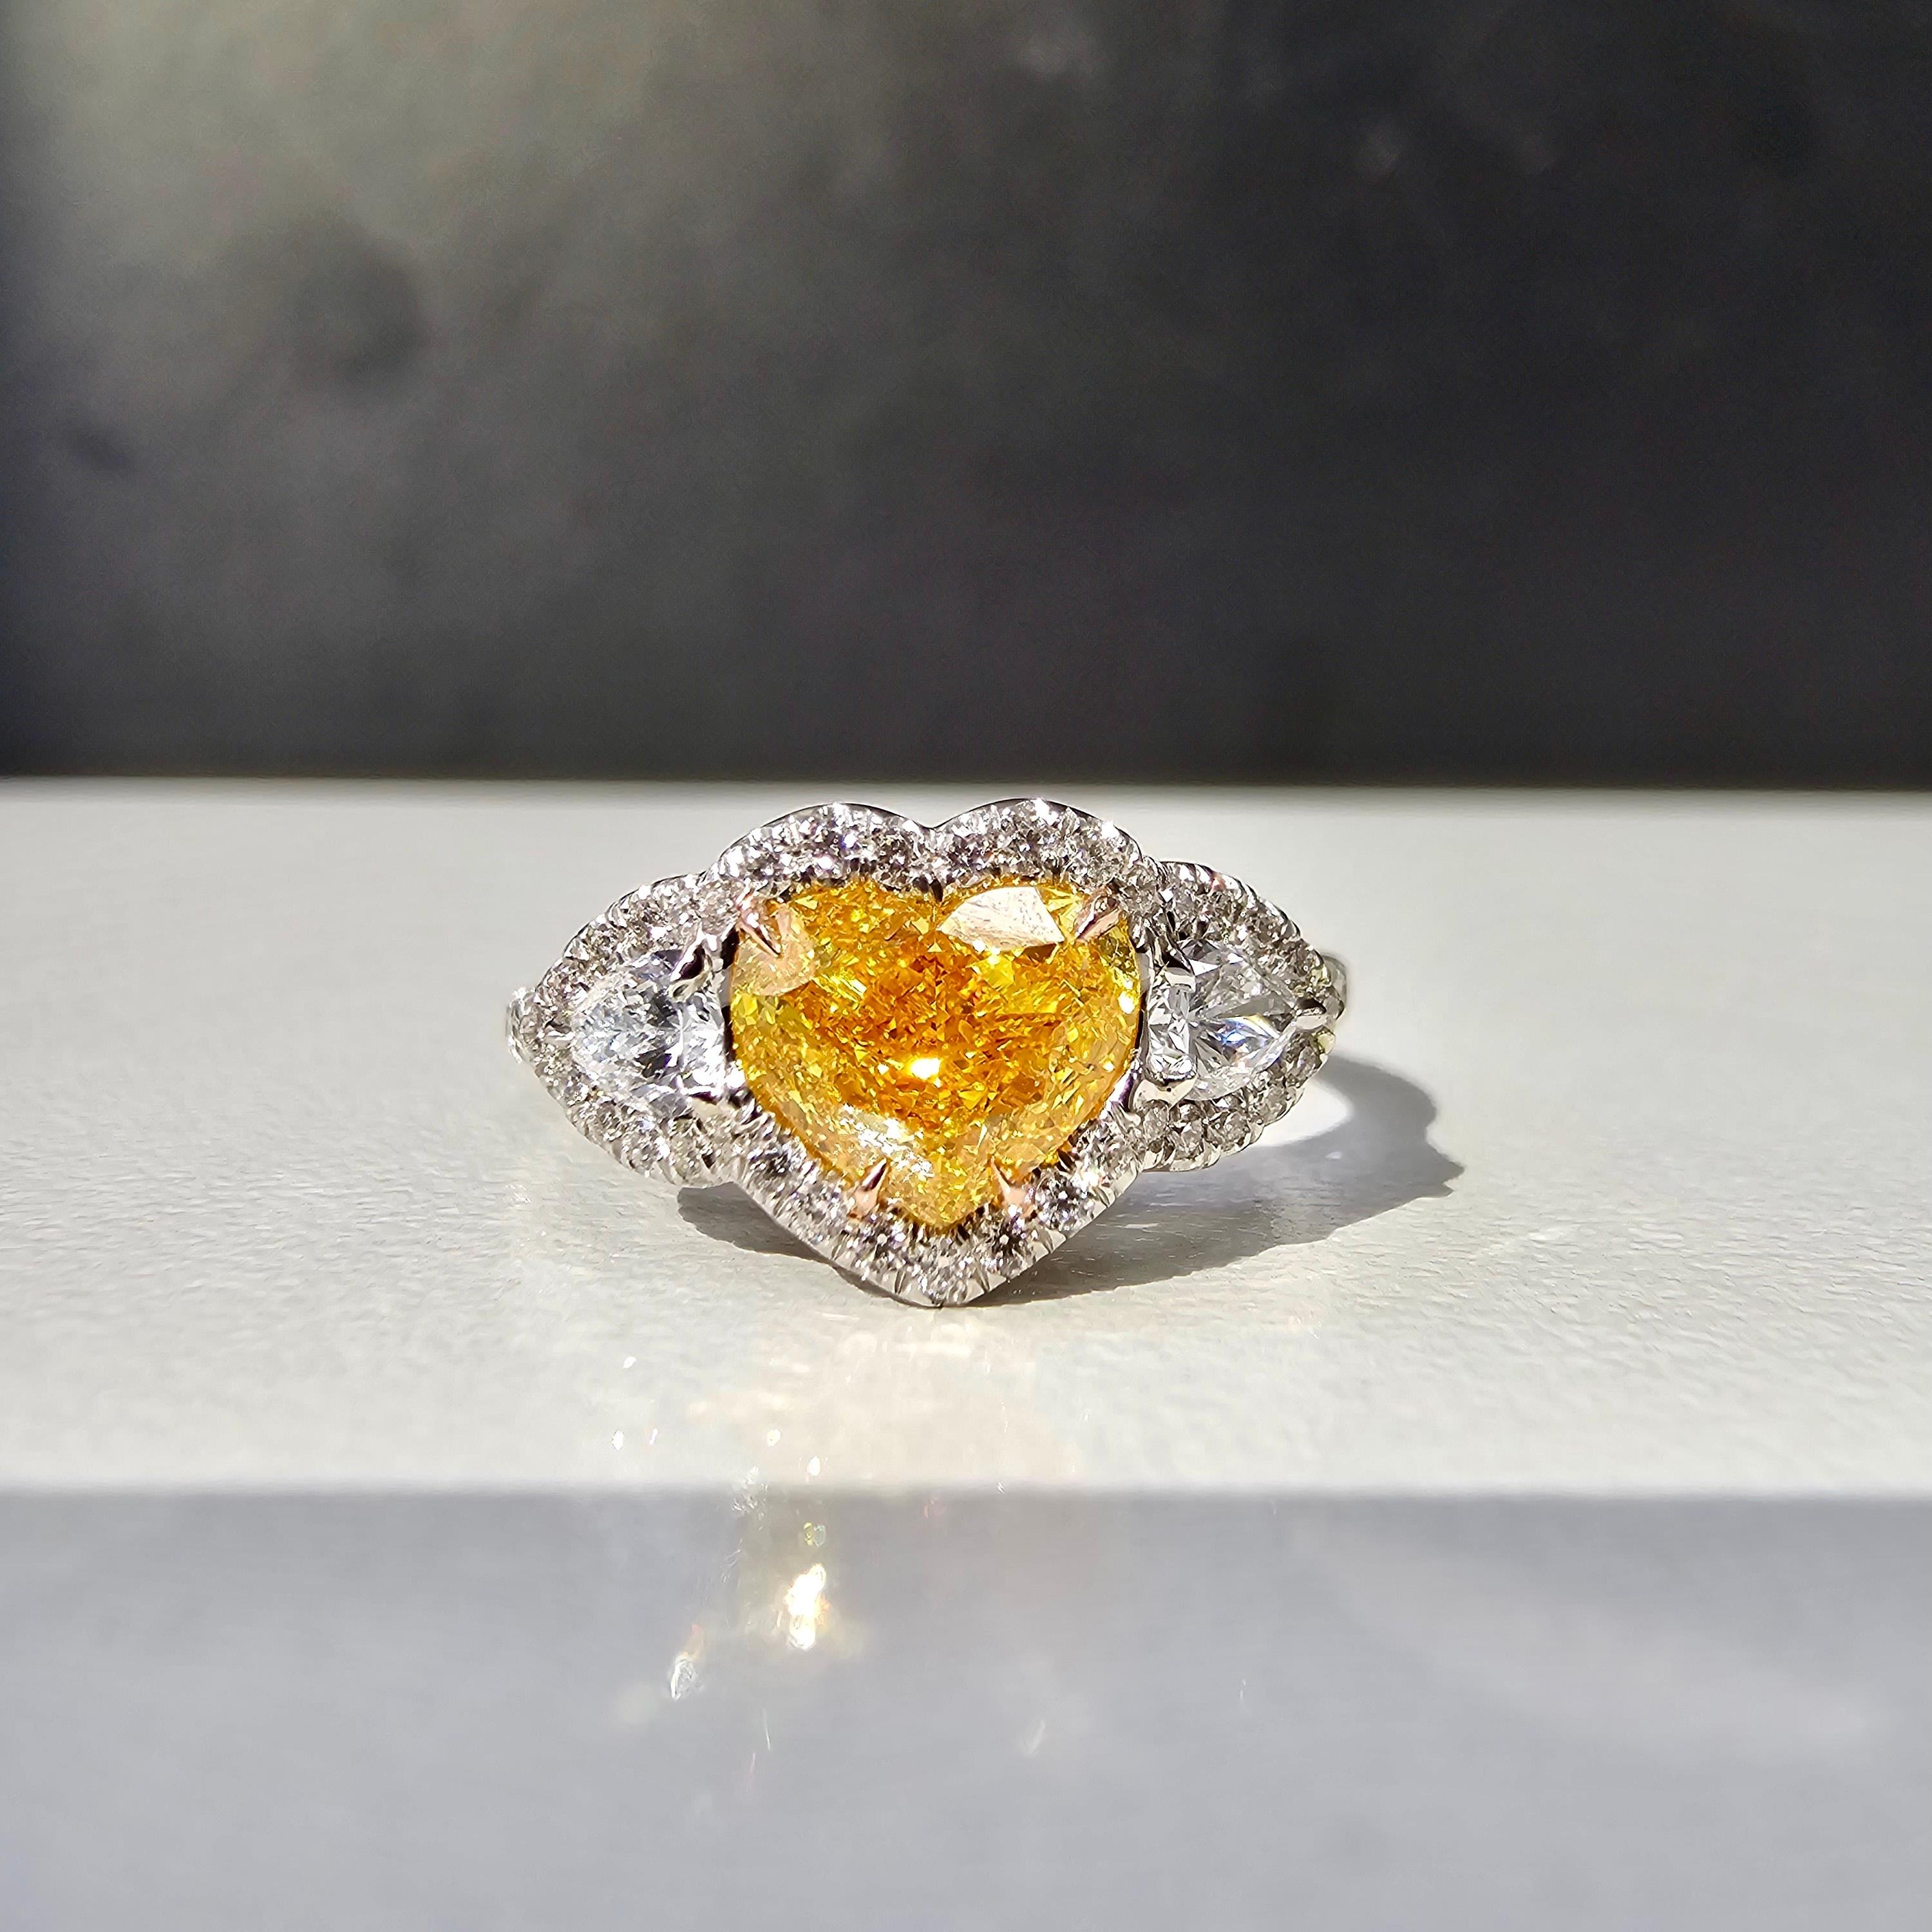 Seltene und schöne 1ct Fancy Vivid Orange Yellow Heart mit VS Klarheit. Der Diamant ist nach oben hin komplett orange!
Dieser Diamant ist ein wahrer Feuerwerkskörper ohne Fliege, aber mit purem Funkeln im ganzen Stein.
Handgefertigter Platinring mit